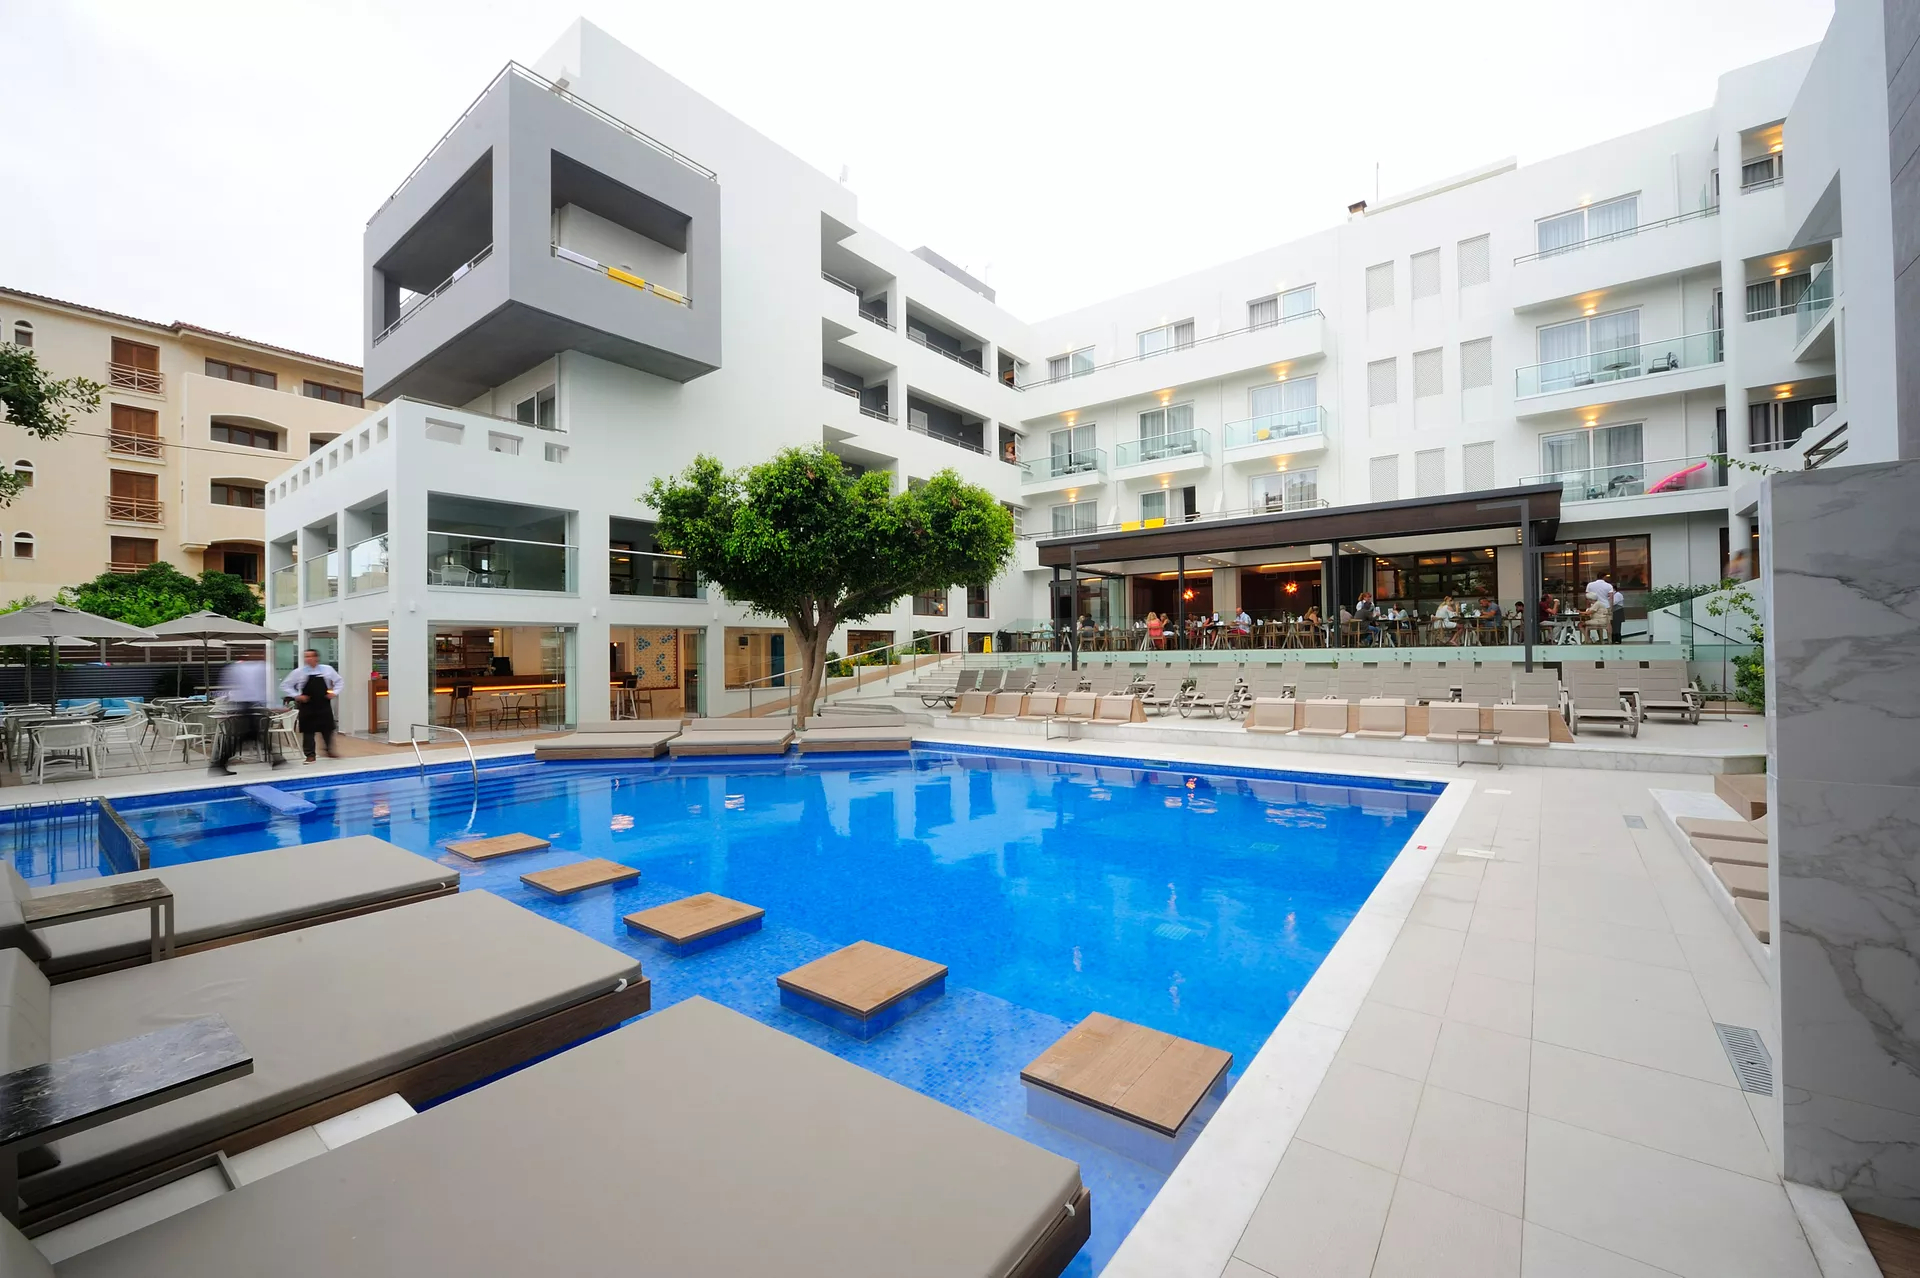 4* Atrium Ambiance Hotel - Ρέθυμνο, Κρήτη ✦ -3% ✦ 2